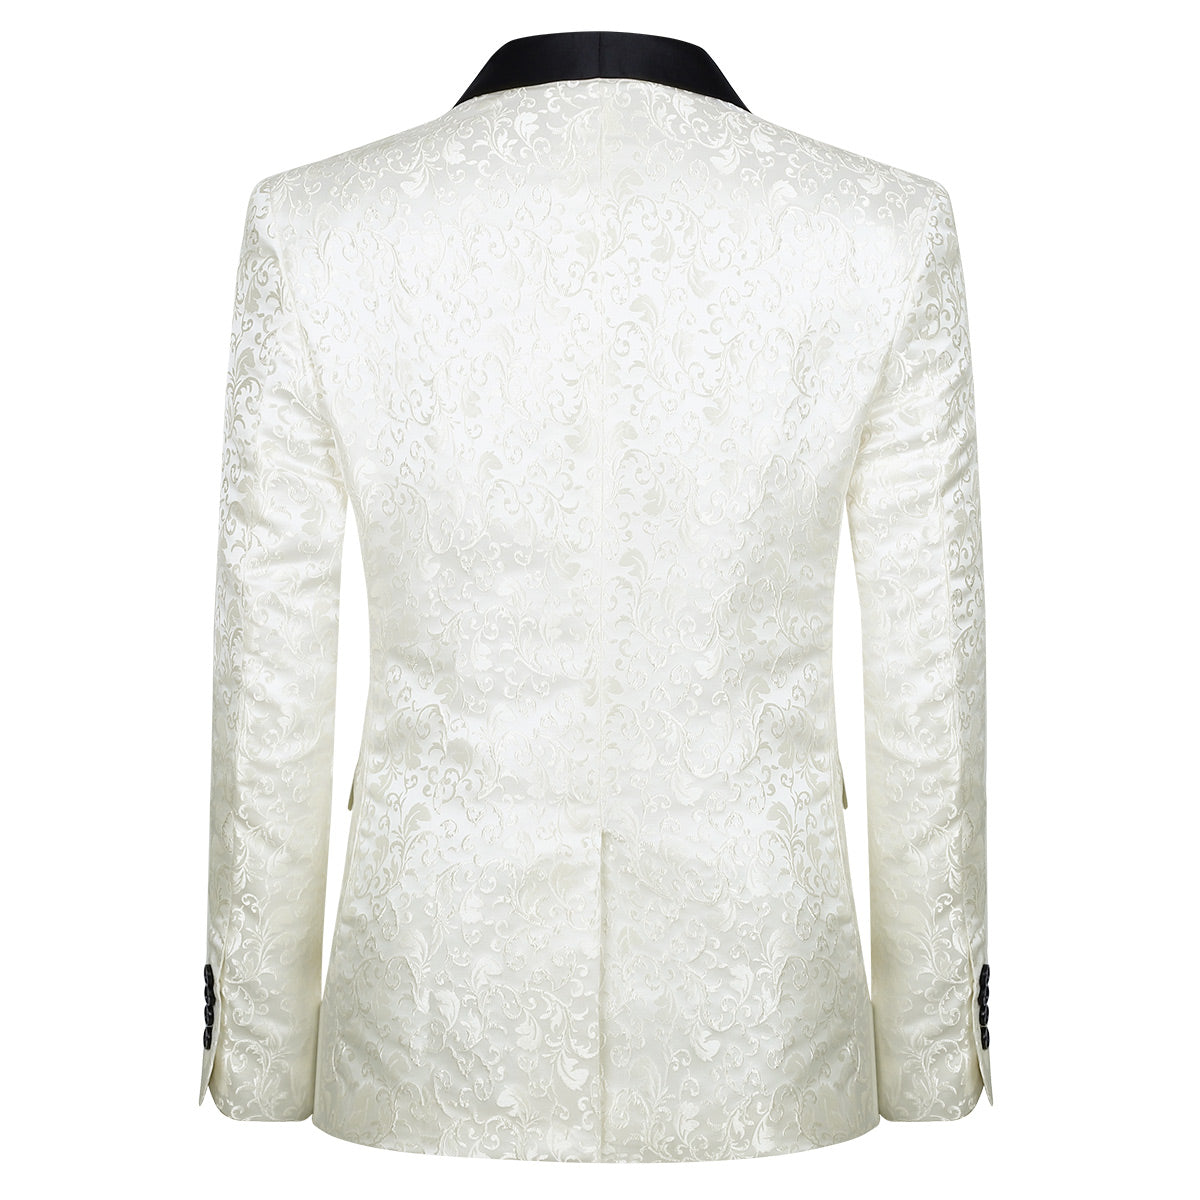 Men's Floral Jacquard Dress Suit Jacket Printed Tux Blazer White